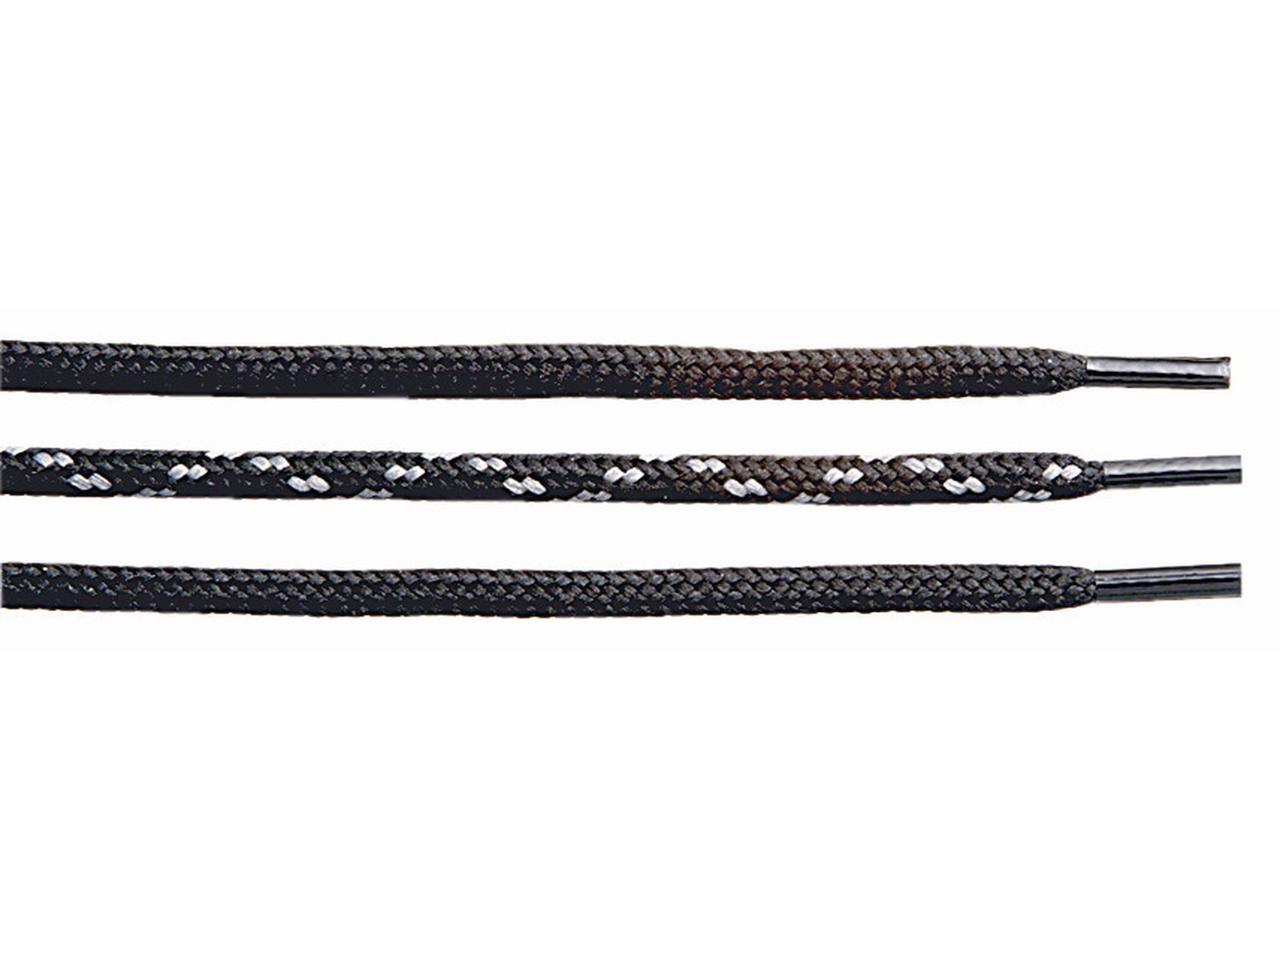 Shooe laces black 110 Cm.